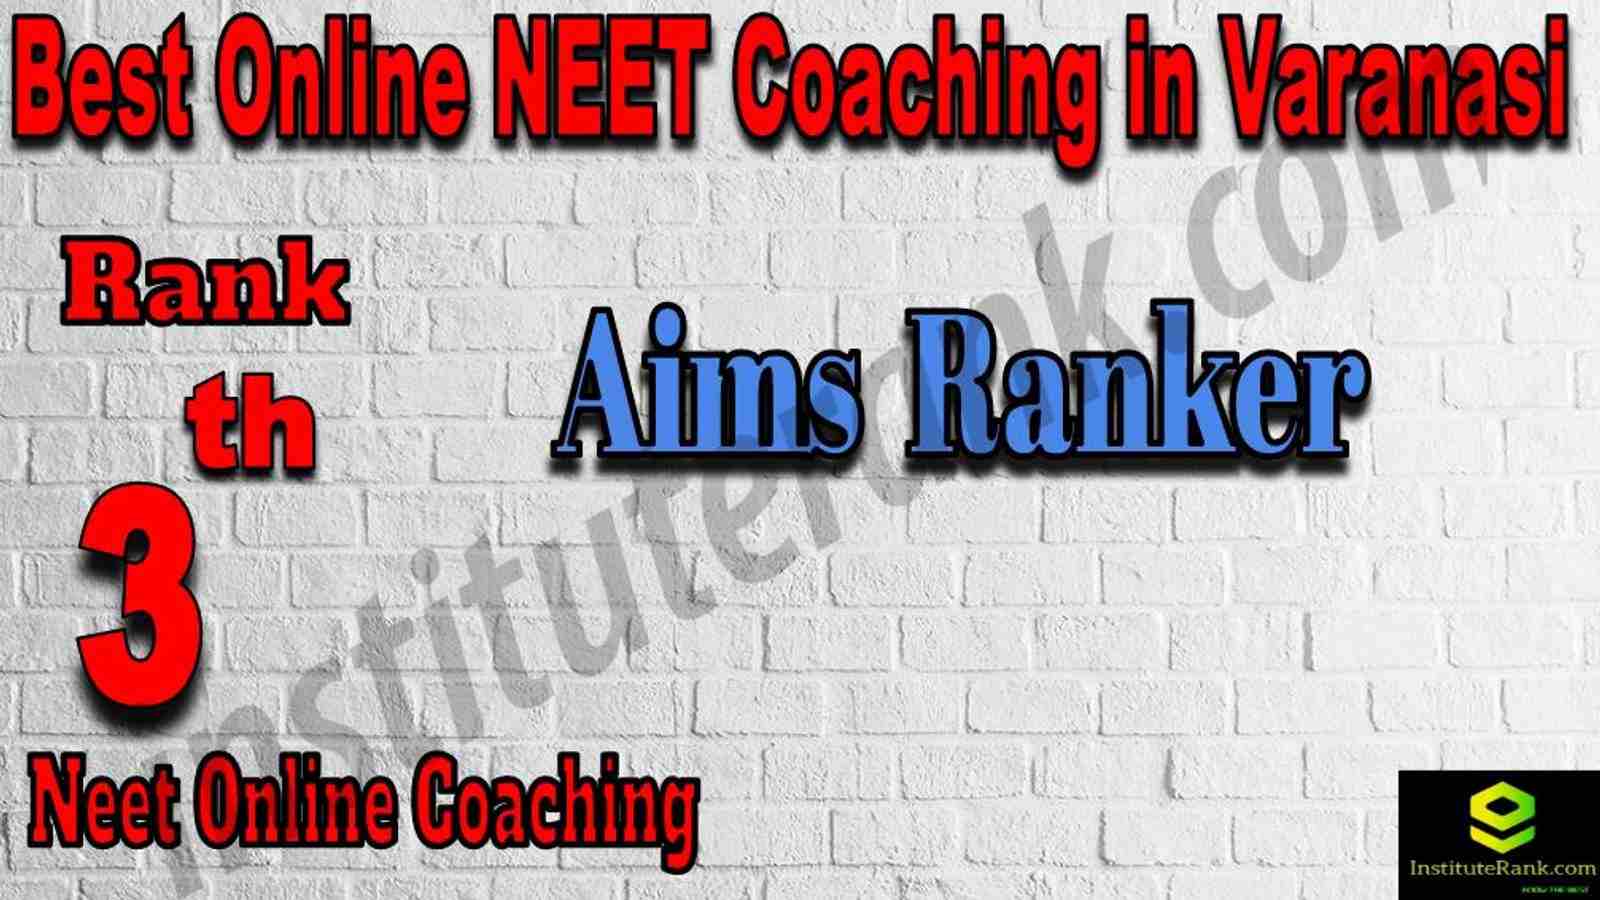 3rd Best Online Neet Coaching in Varanasi